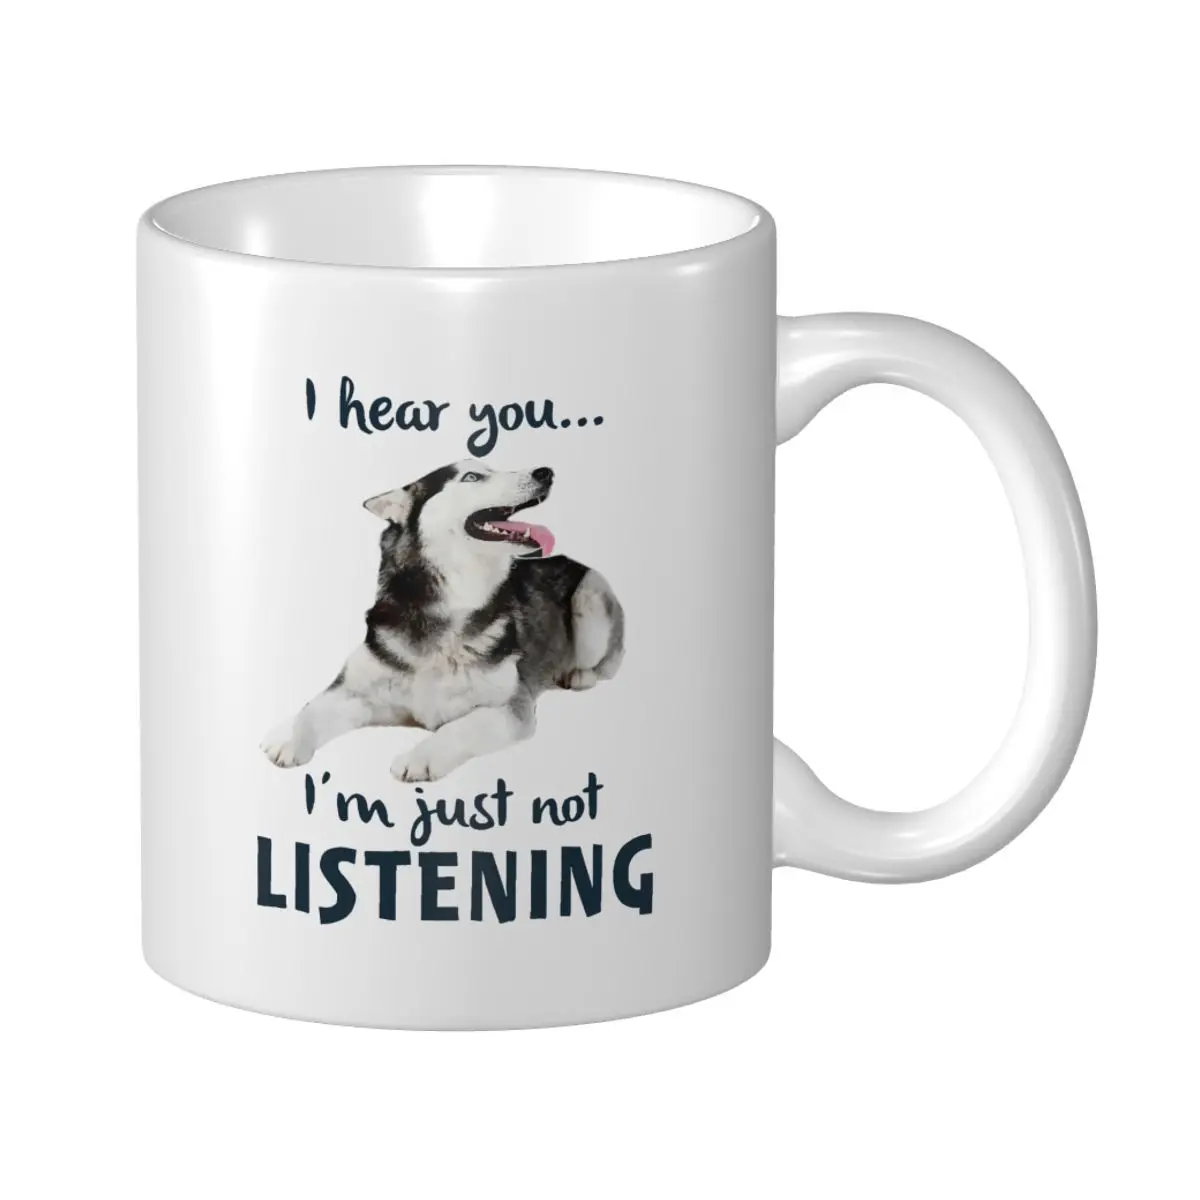 

Кружка «Марк-чашка» «я тебя слышу» «Я просто не слушаю» Сибирский хаски для любителей собак, кофе, чая, кружки для путешествий, офиса и дома